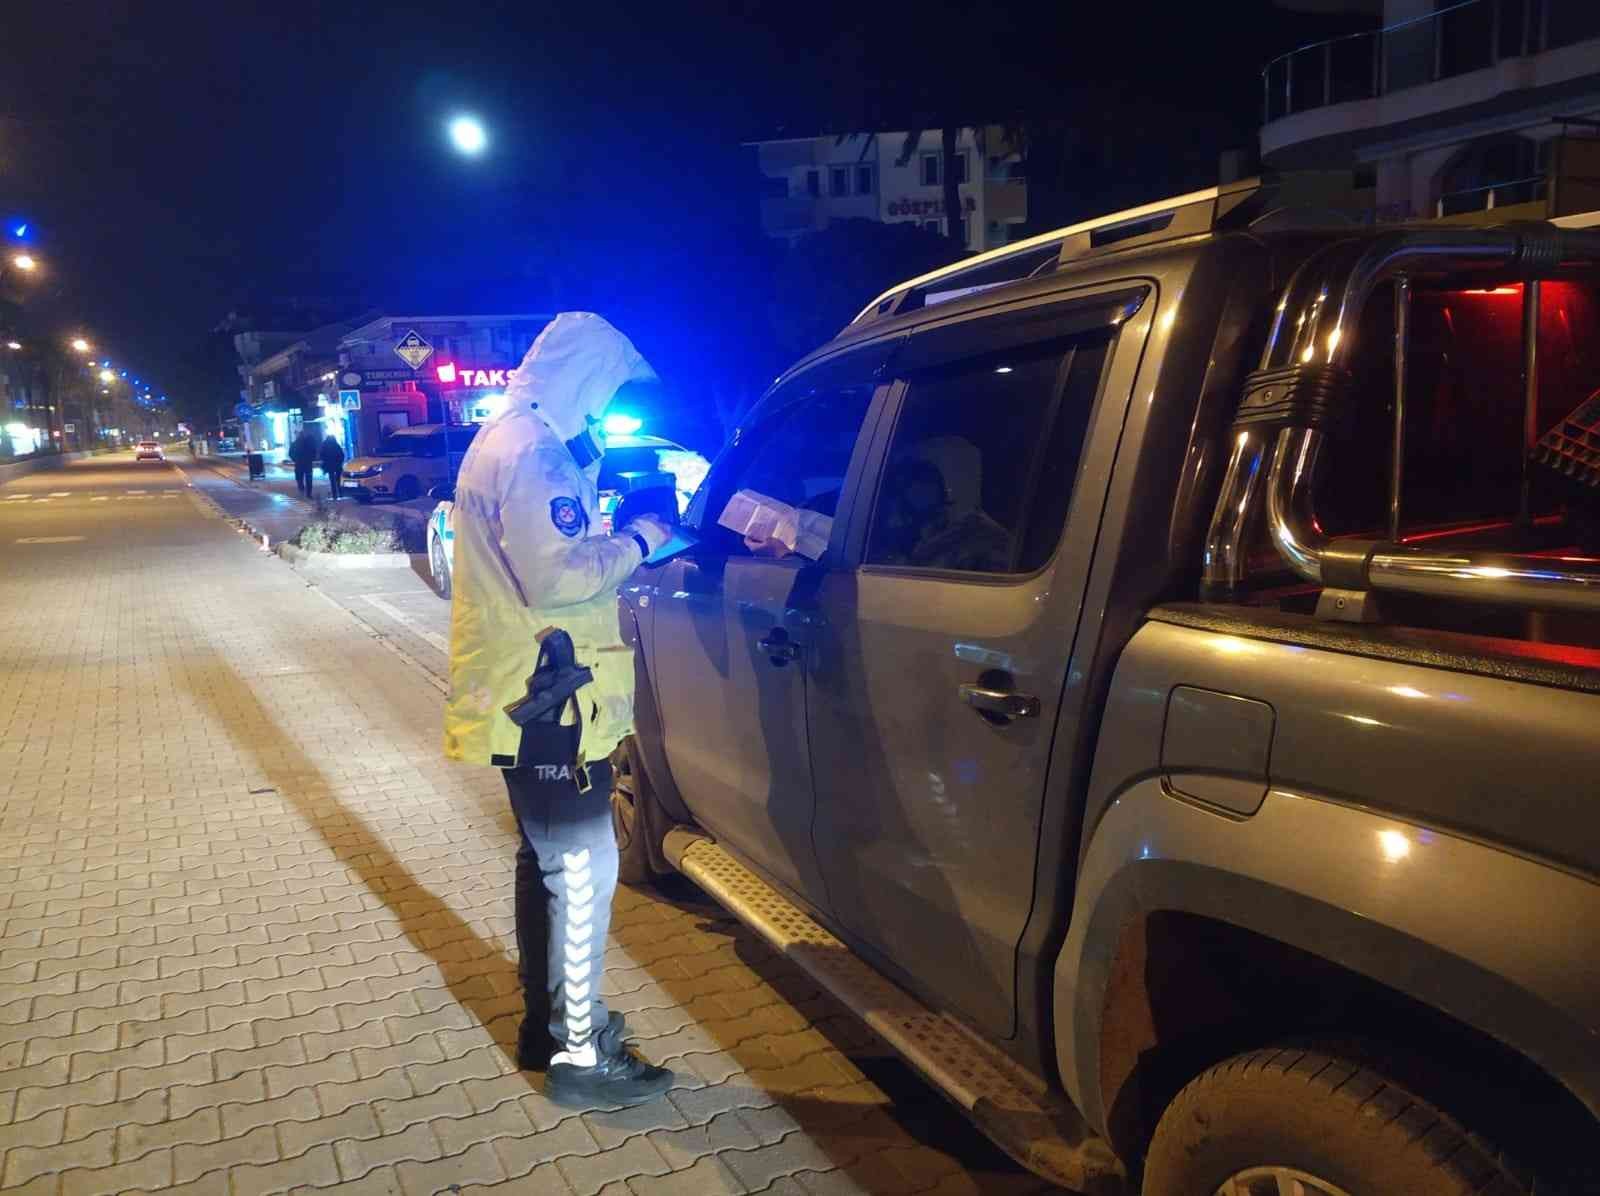 Marmaris’te trafik denetimleri arttırıldı, kural tanımayan sürücülere ceza yağdı #mugla